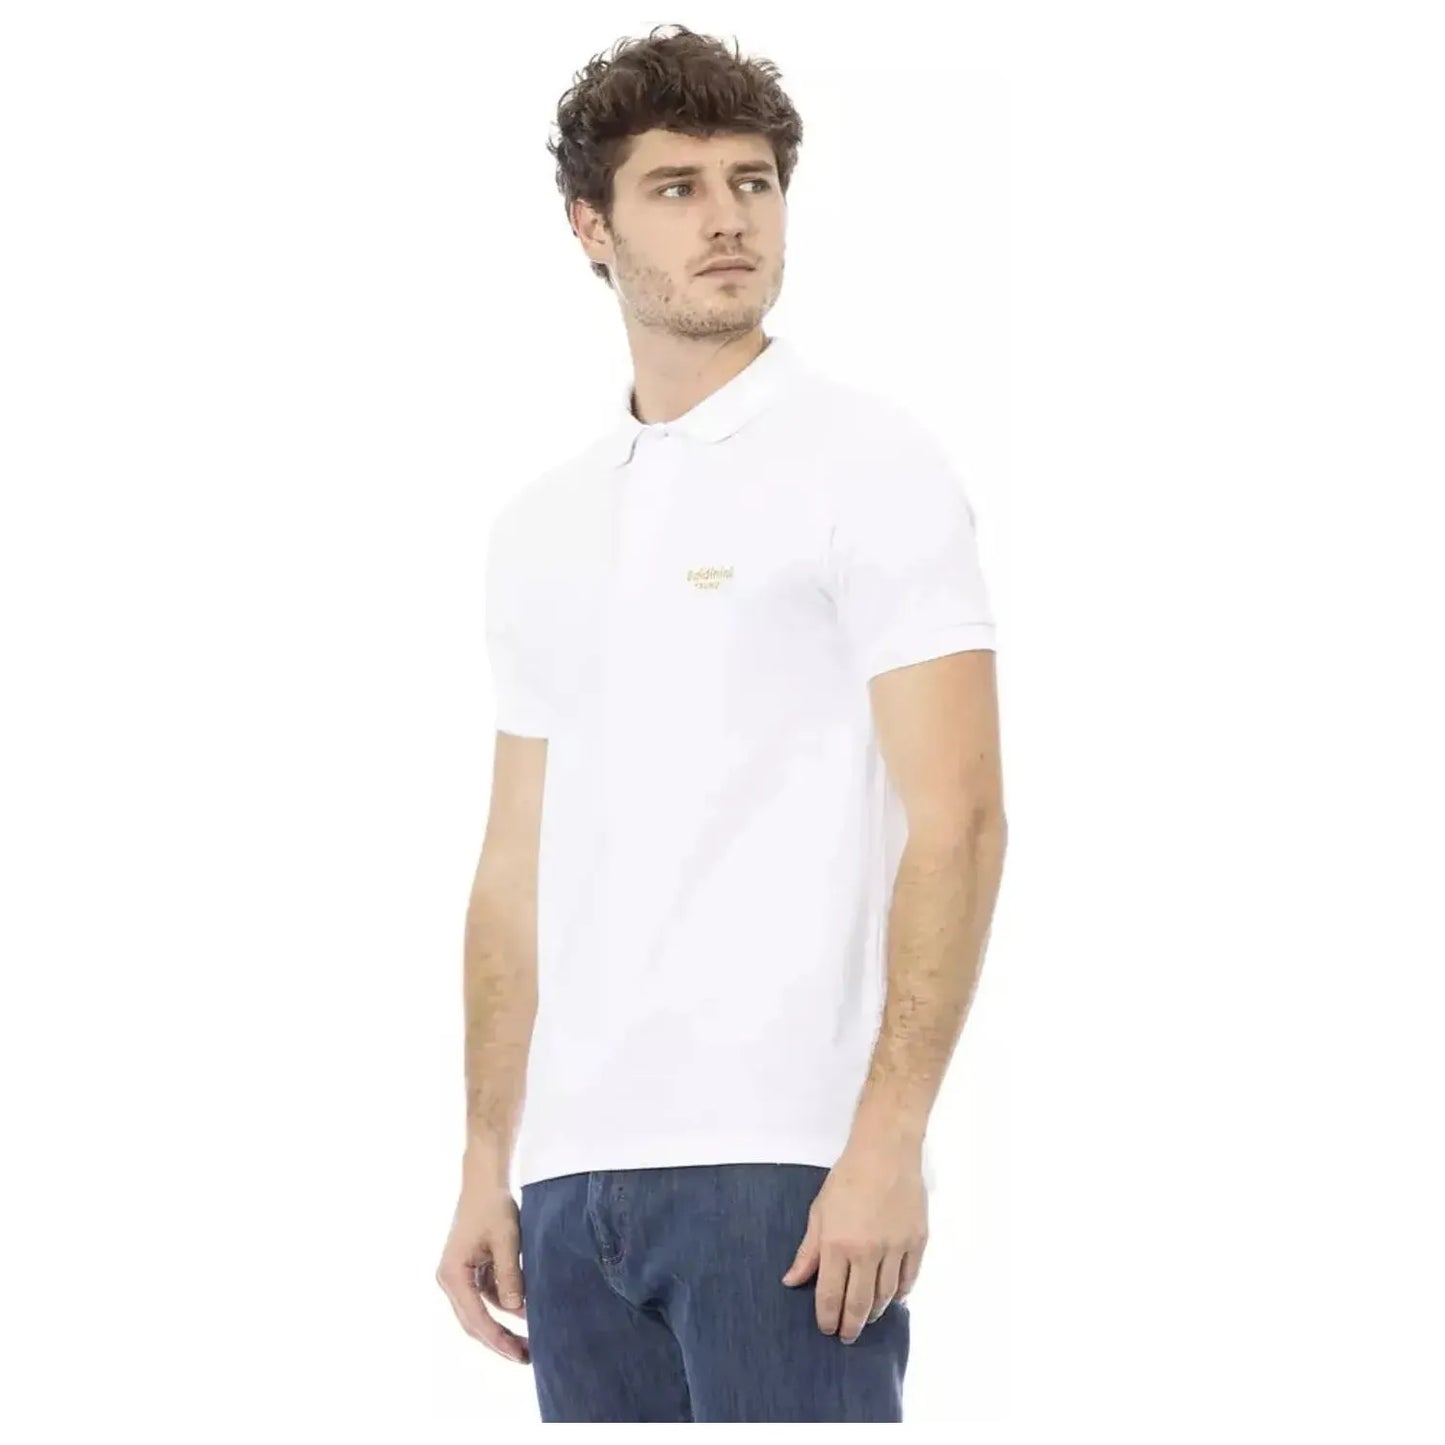 Baldinini Trend Elegant White Cotton Polo with Chic Embroidery white-cotton-polo-shirt-20